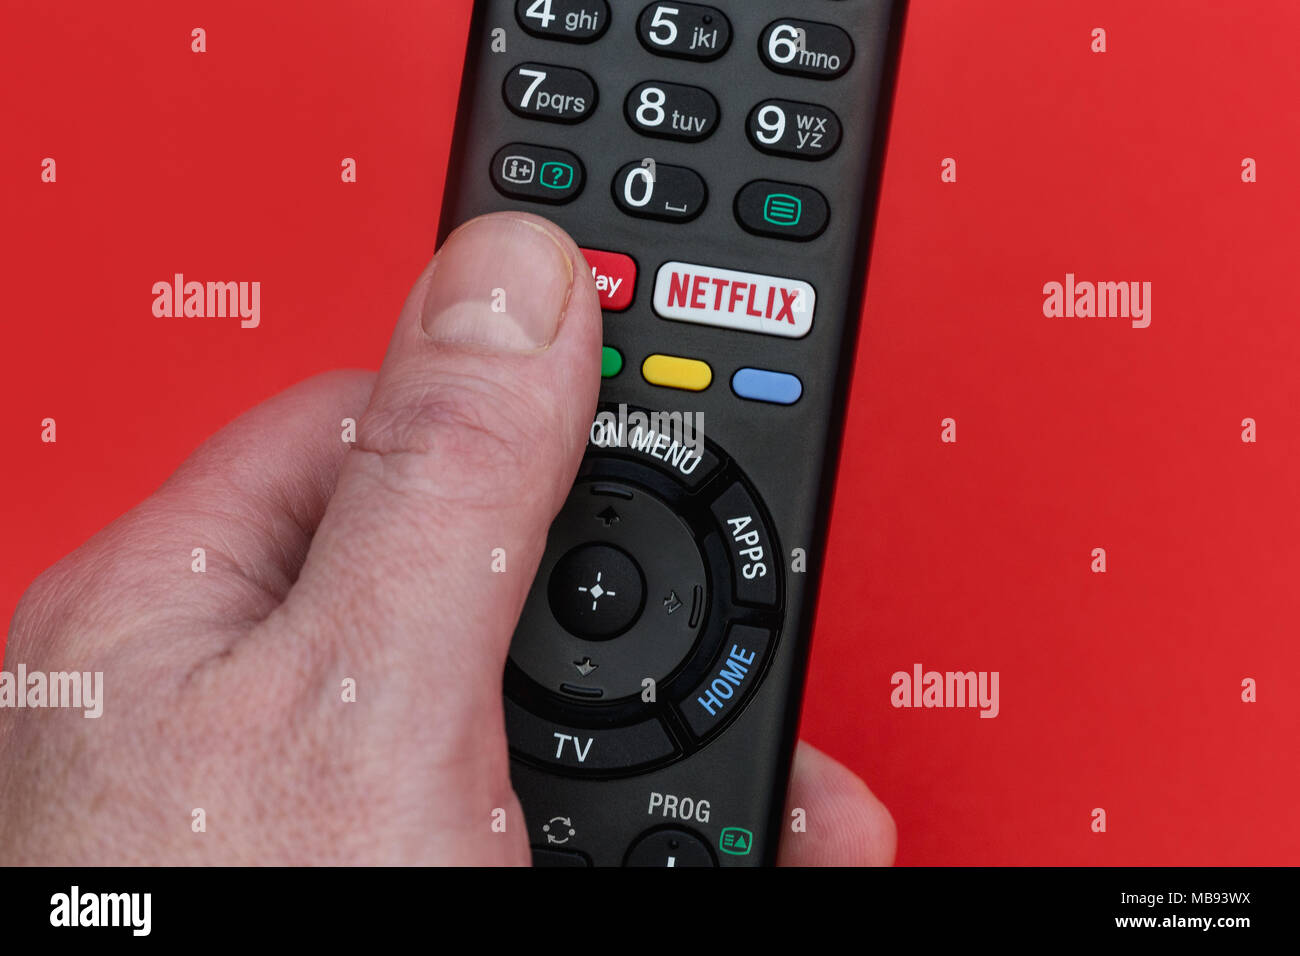 Londra - Aprile 06, 2018: la mano che tiene la televisione telecomando con pulsante di Netflix Foto Stock